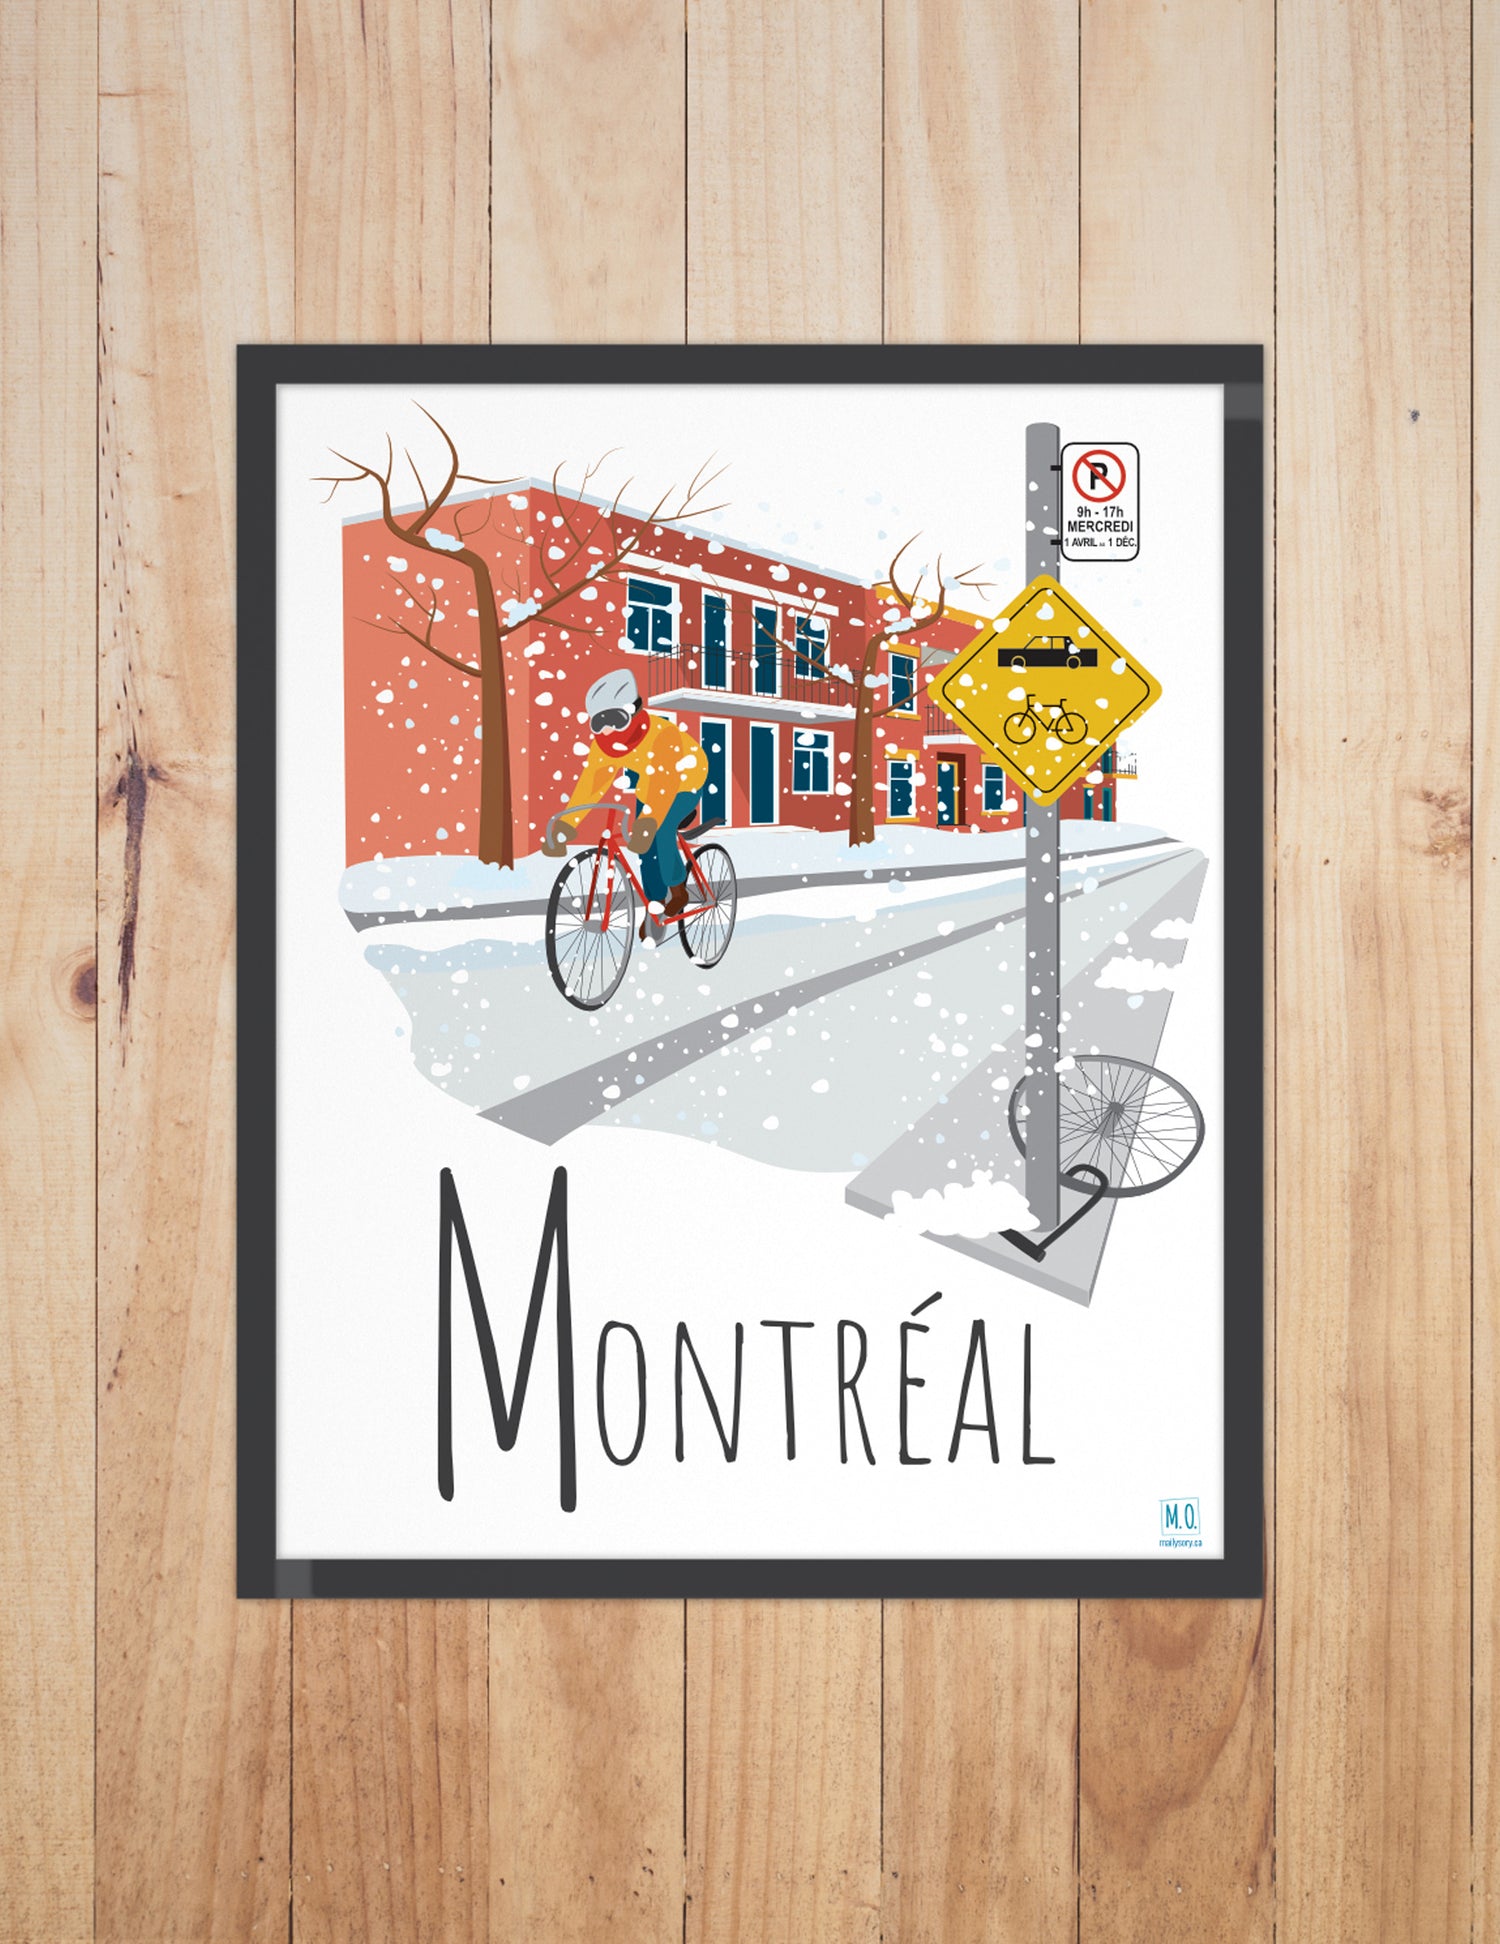 Affiche - Montréal, Vélo en hiver. Vendue chez Tah-dah ! 